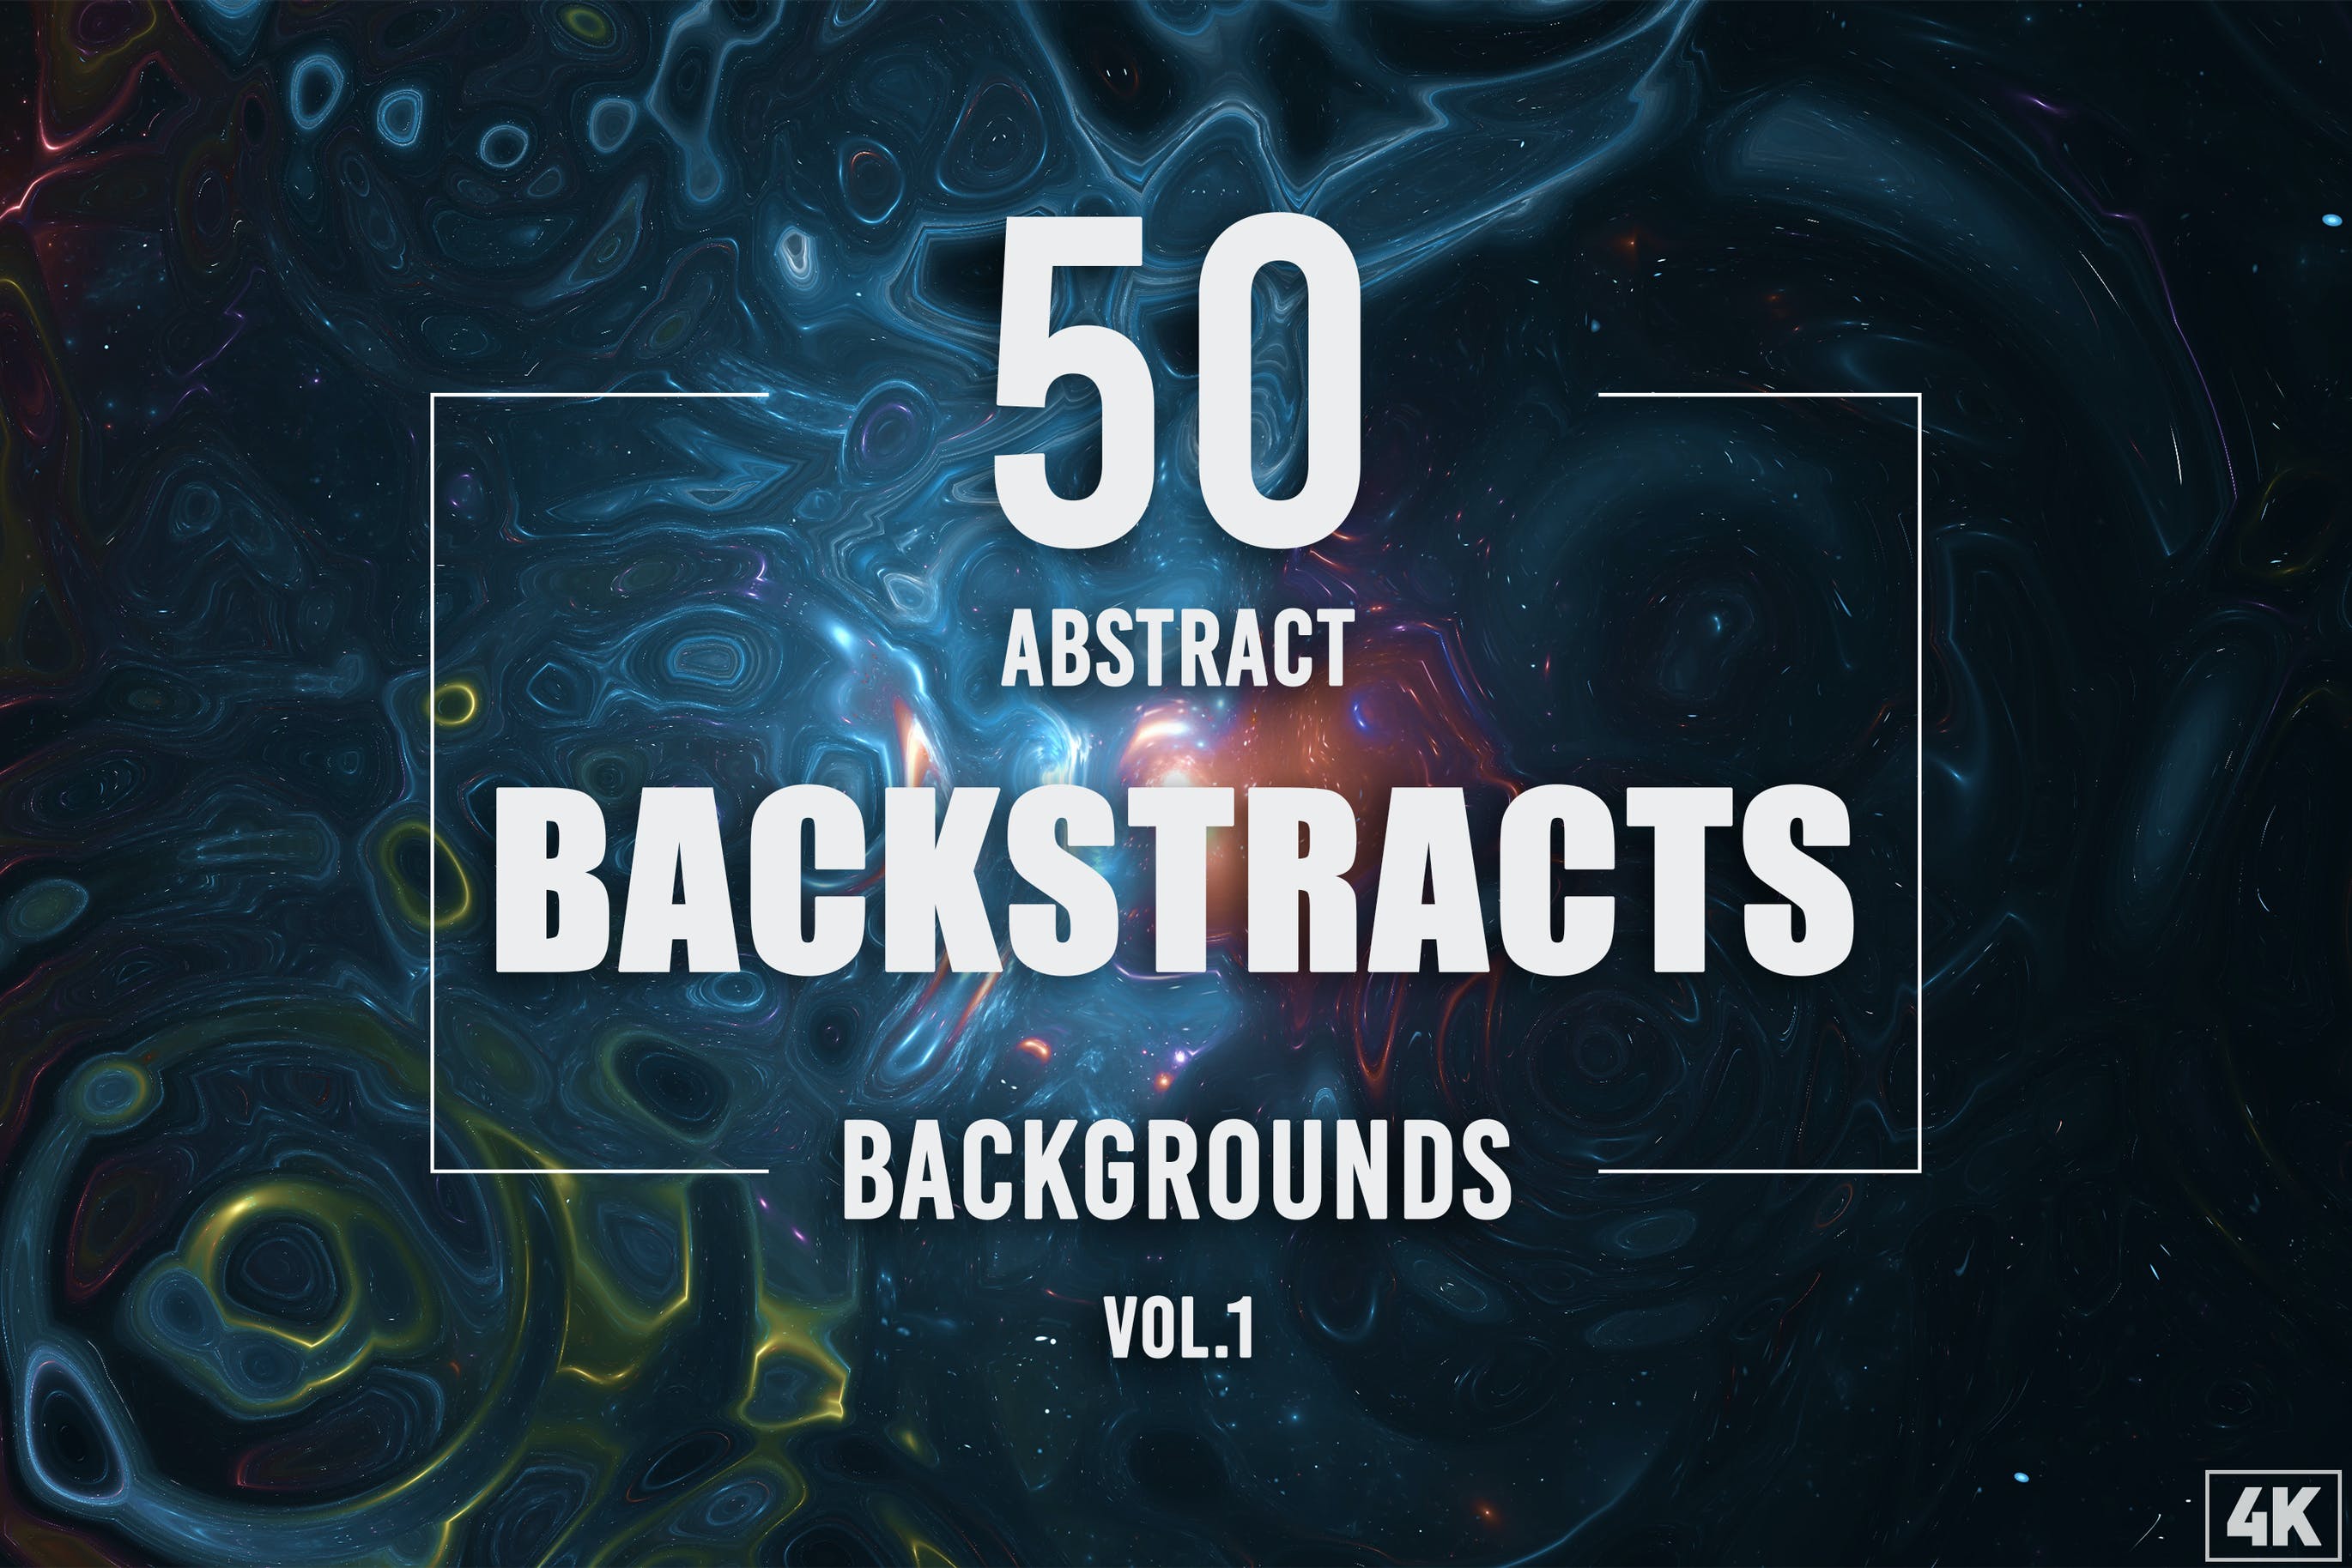 50个流体抽象背景素材v1 50 Abstract Backstracts – Vol. 1 图片素材 第1张